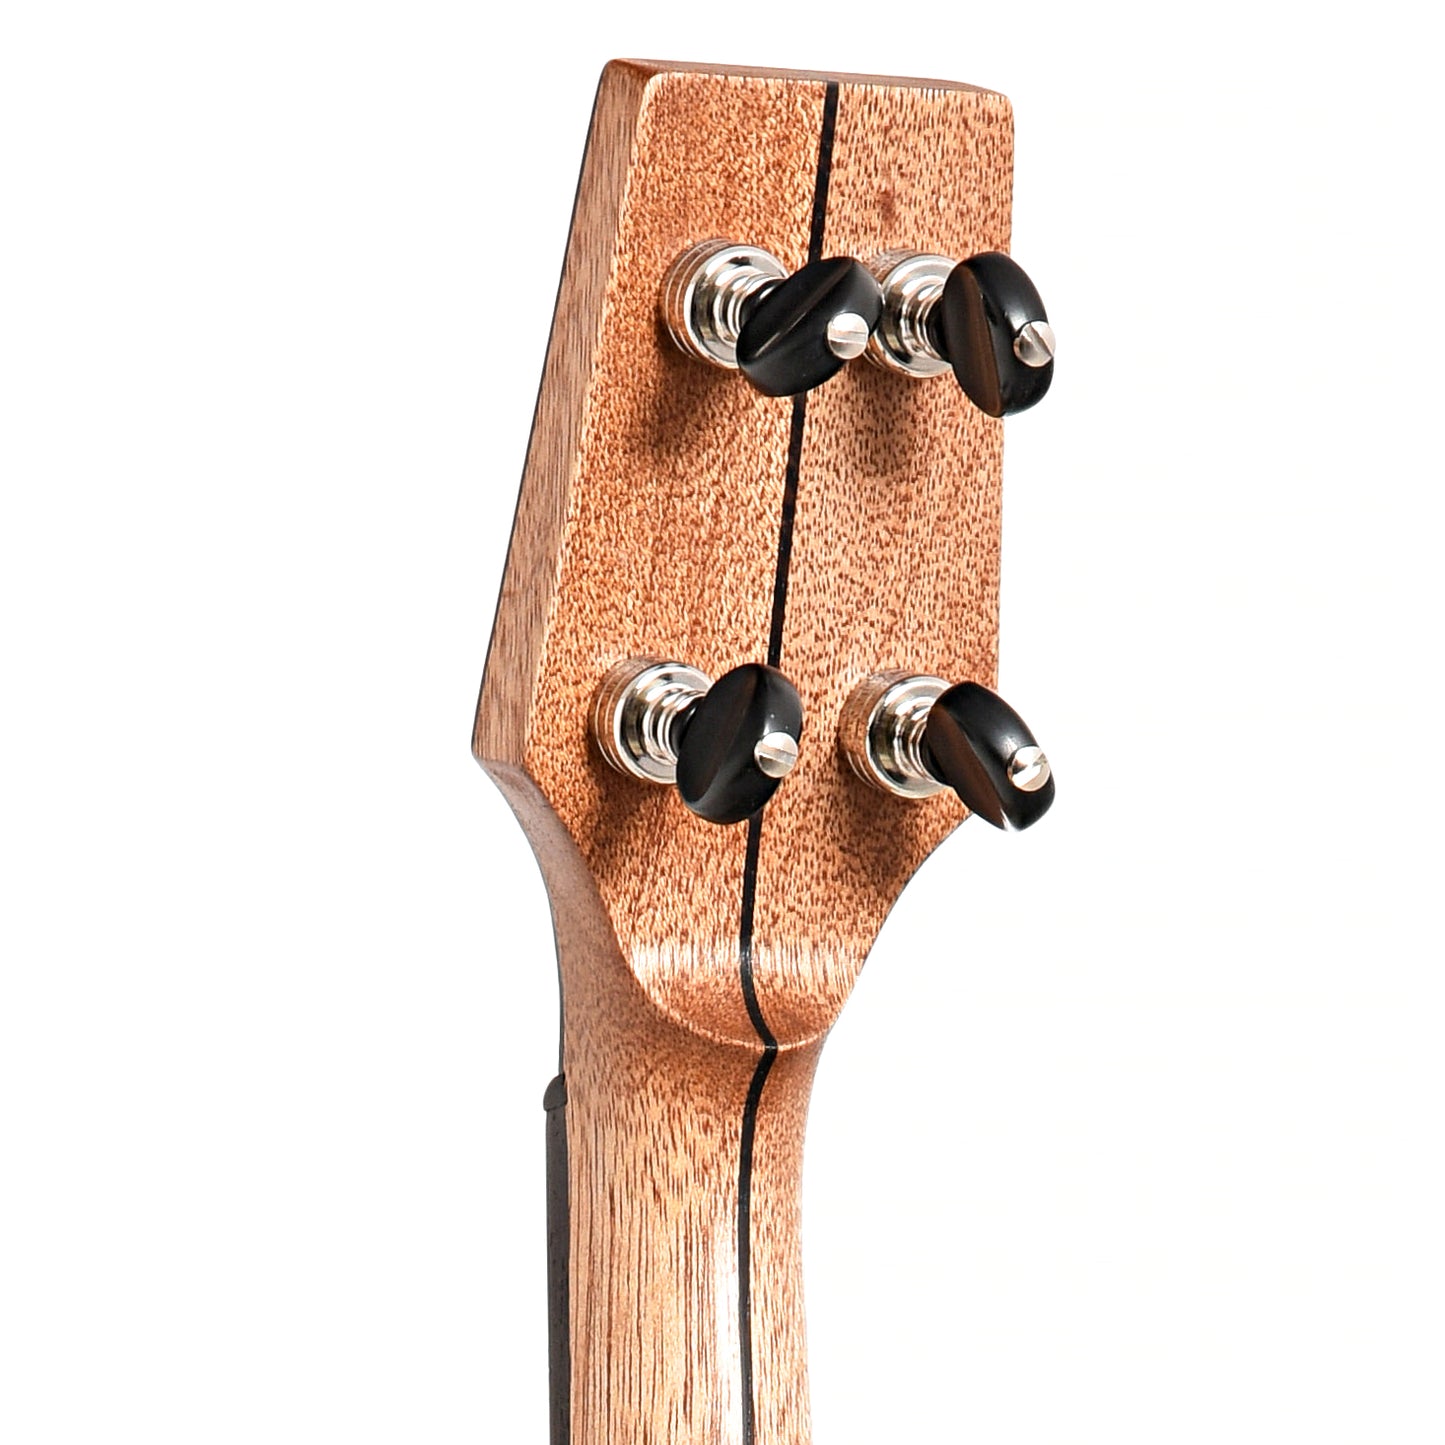 Image 8 of Dogwood Banjo Co. 12" Openback Banjo, No. 189, with Gigbag - SKU# DW189 : Product Type Open Back Banjos : Elderly Instruments